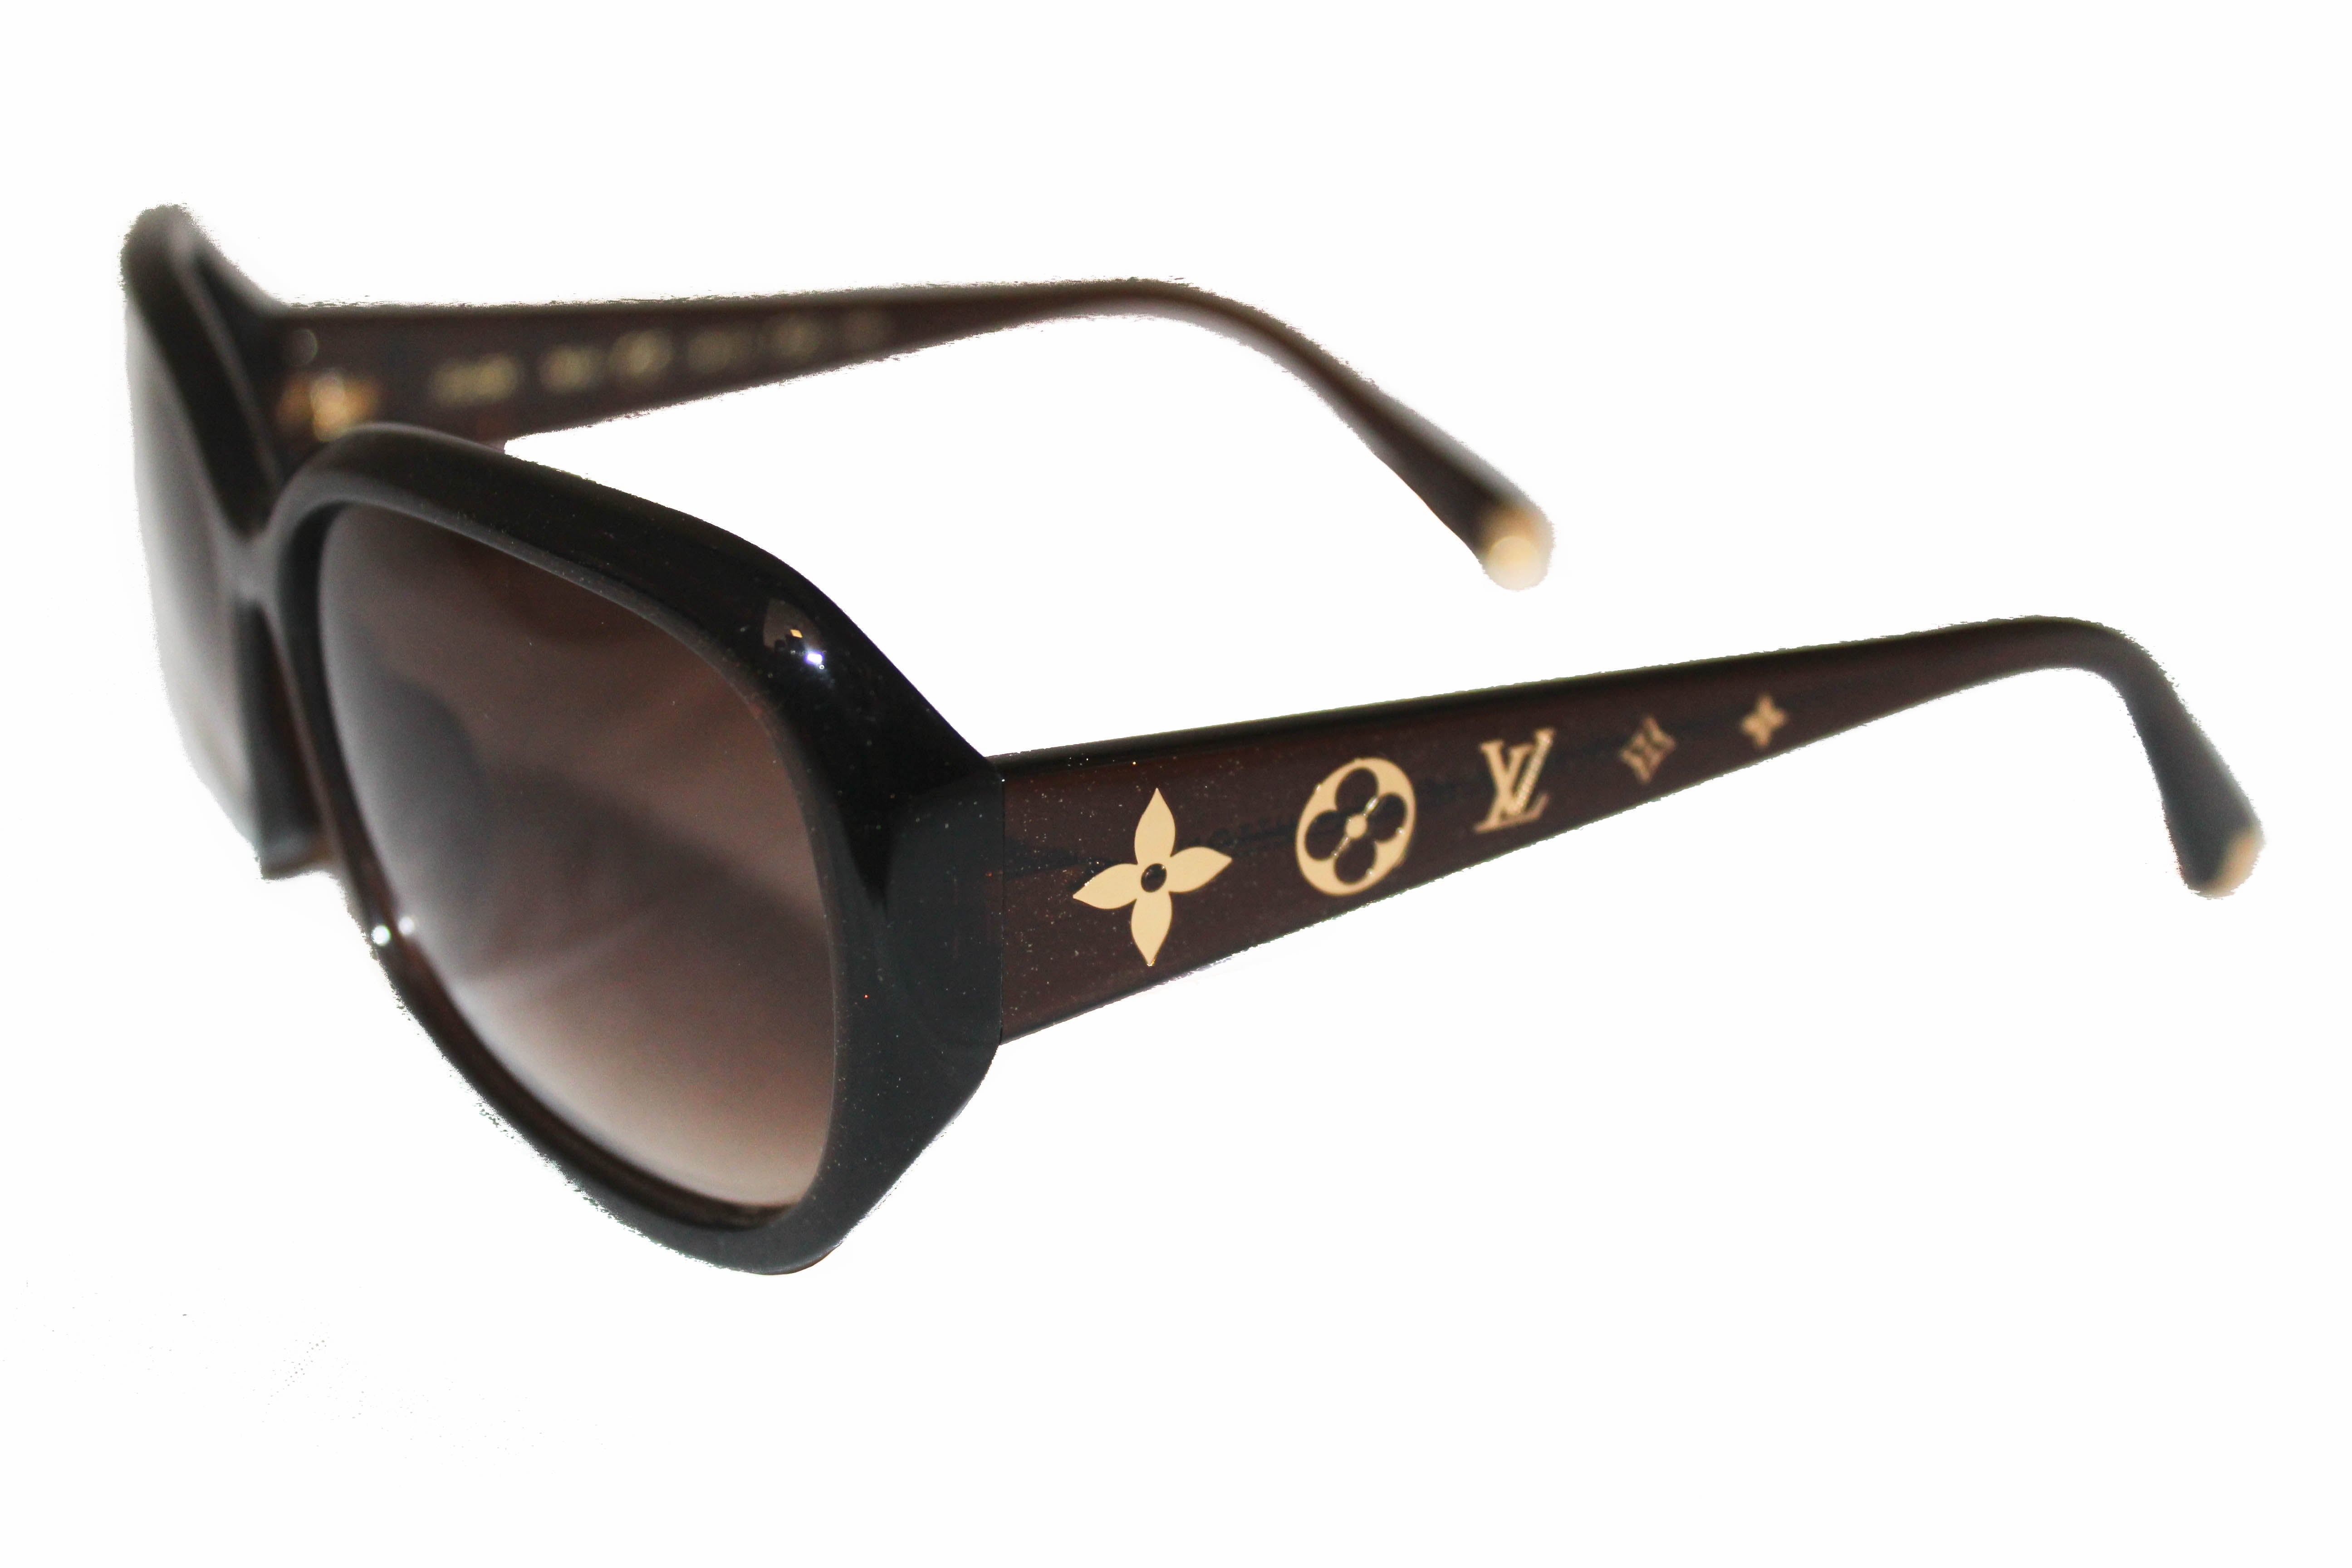 Authentic Louis Vuitton Brown Glitter Obsession Sunglasses – Paris